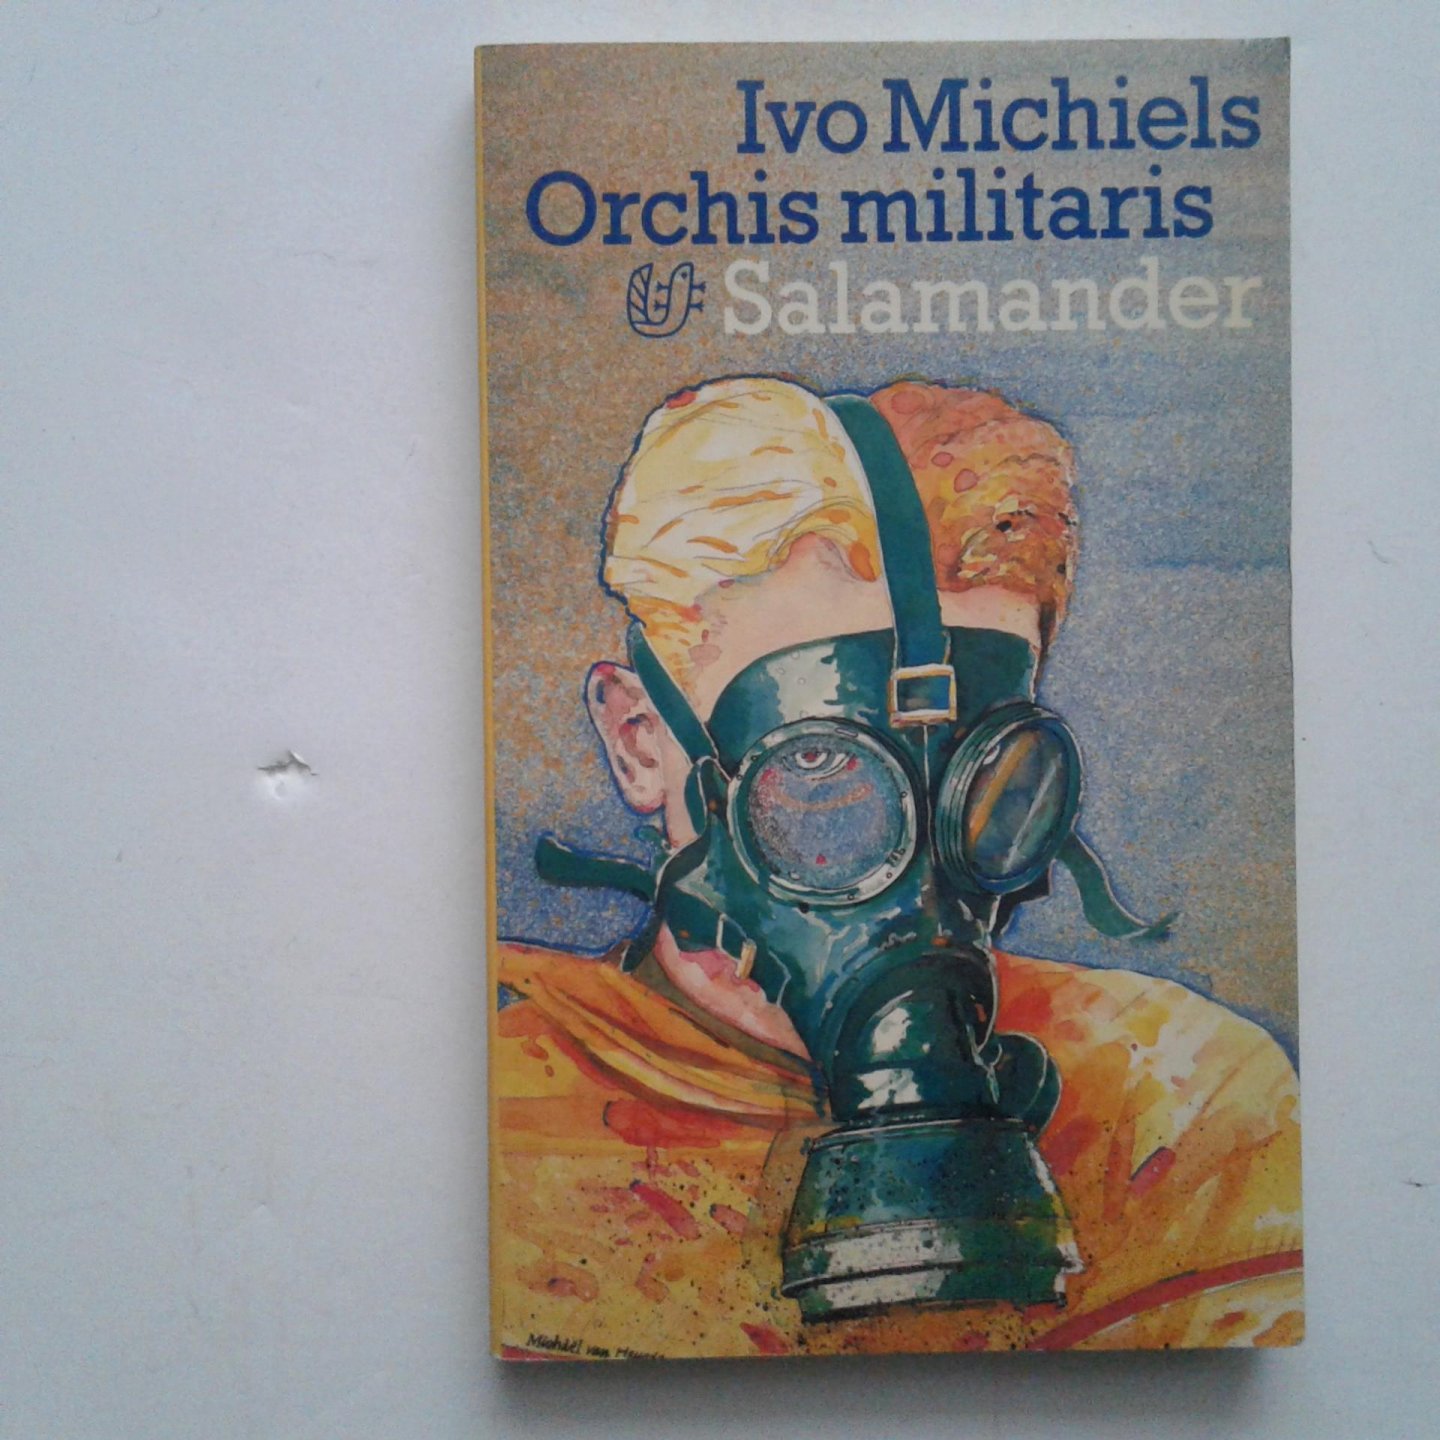 Michiels, Ivo - Orchis militaris